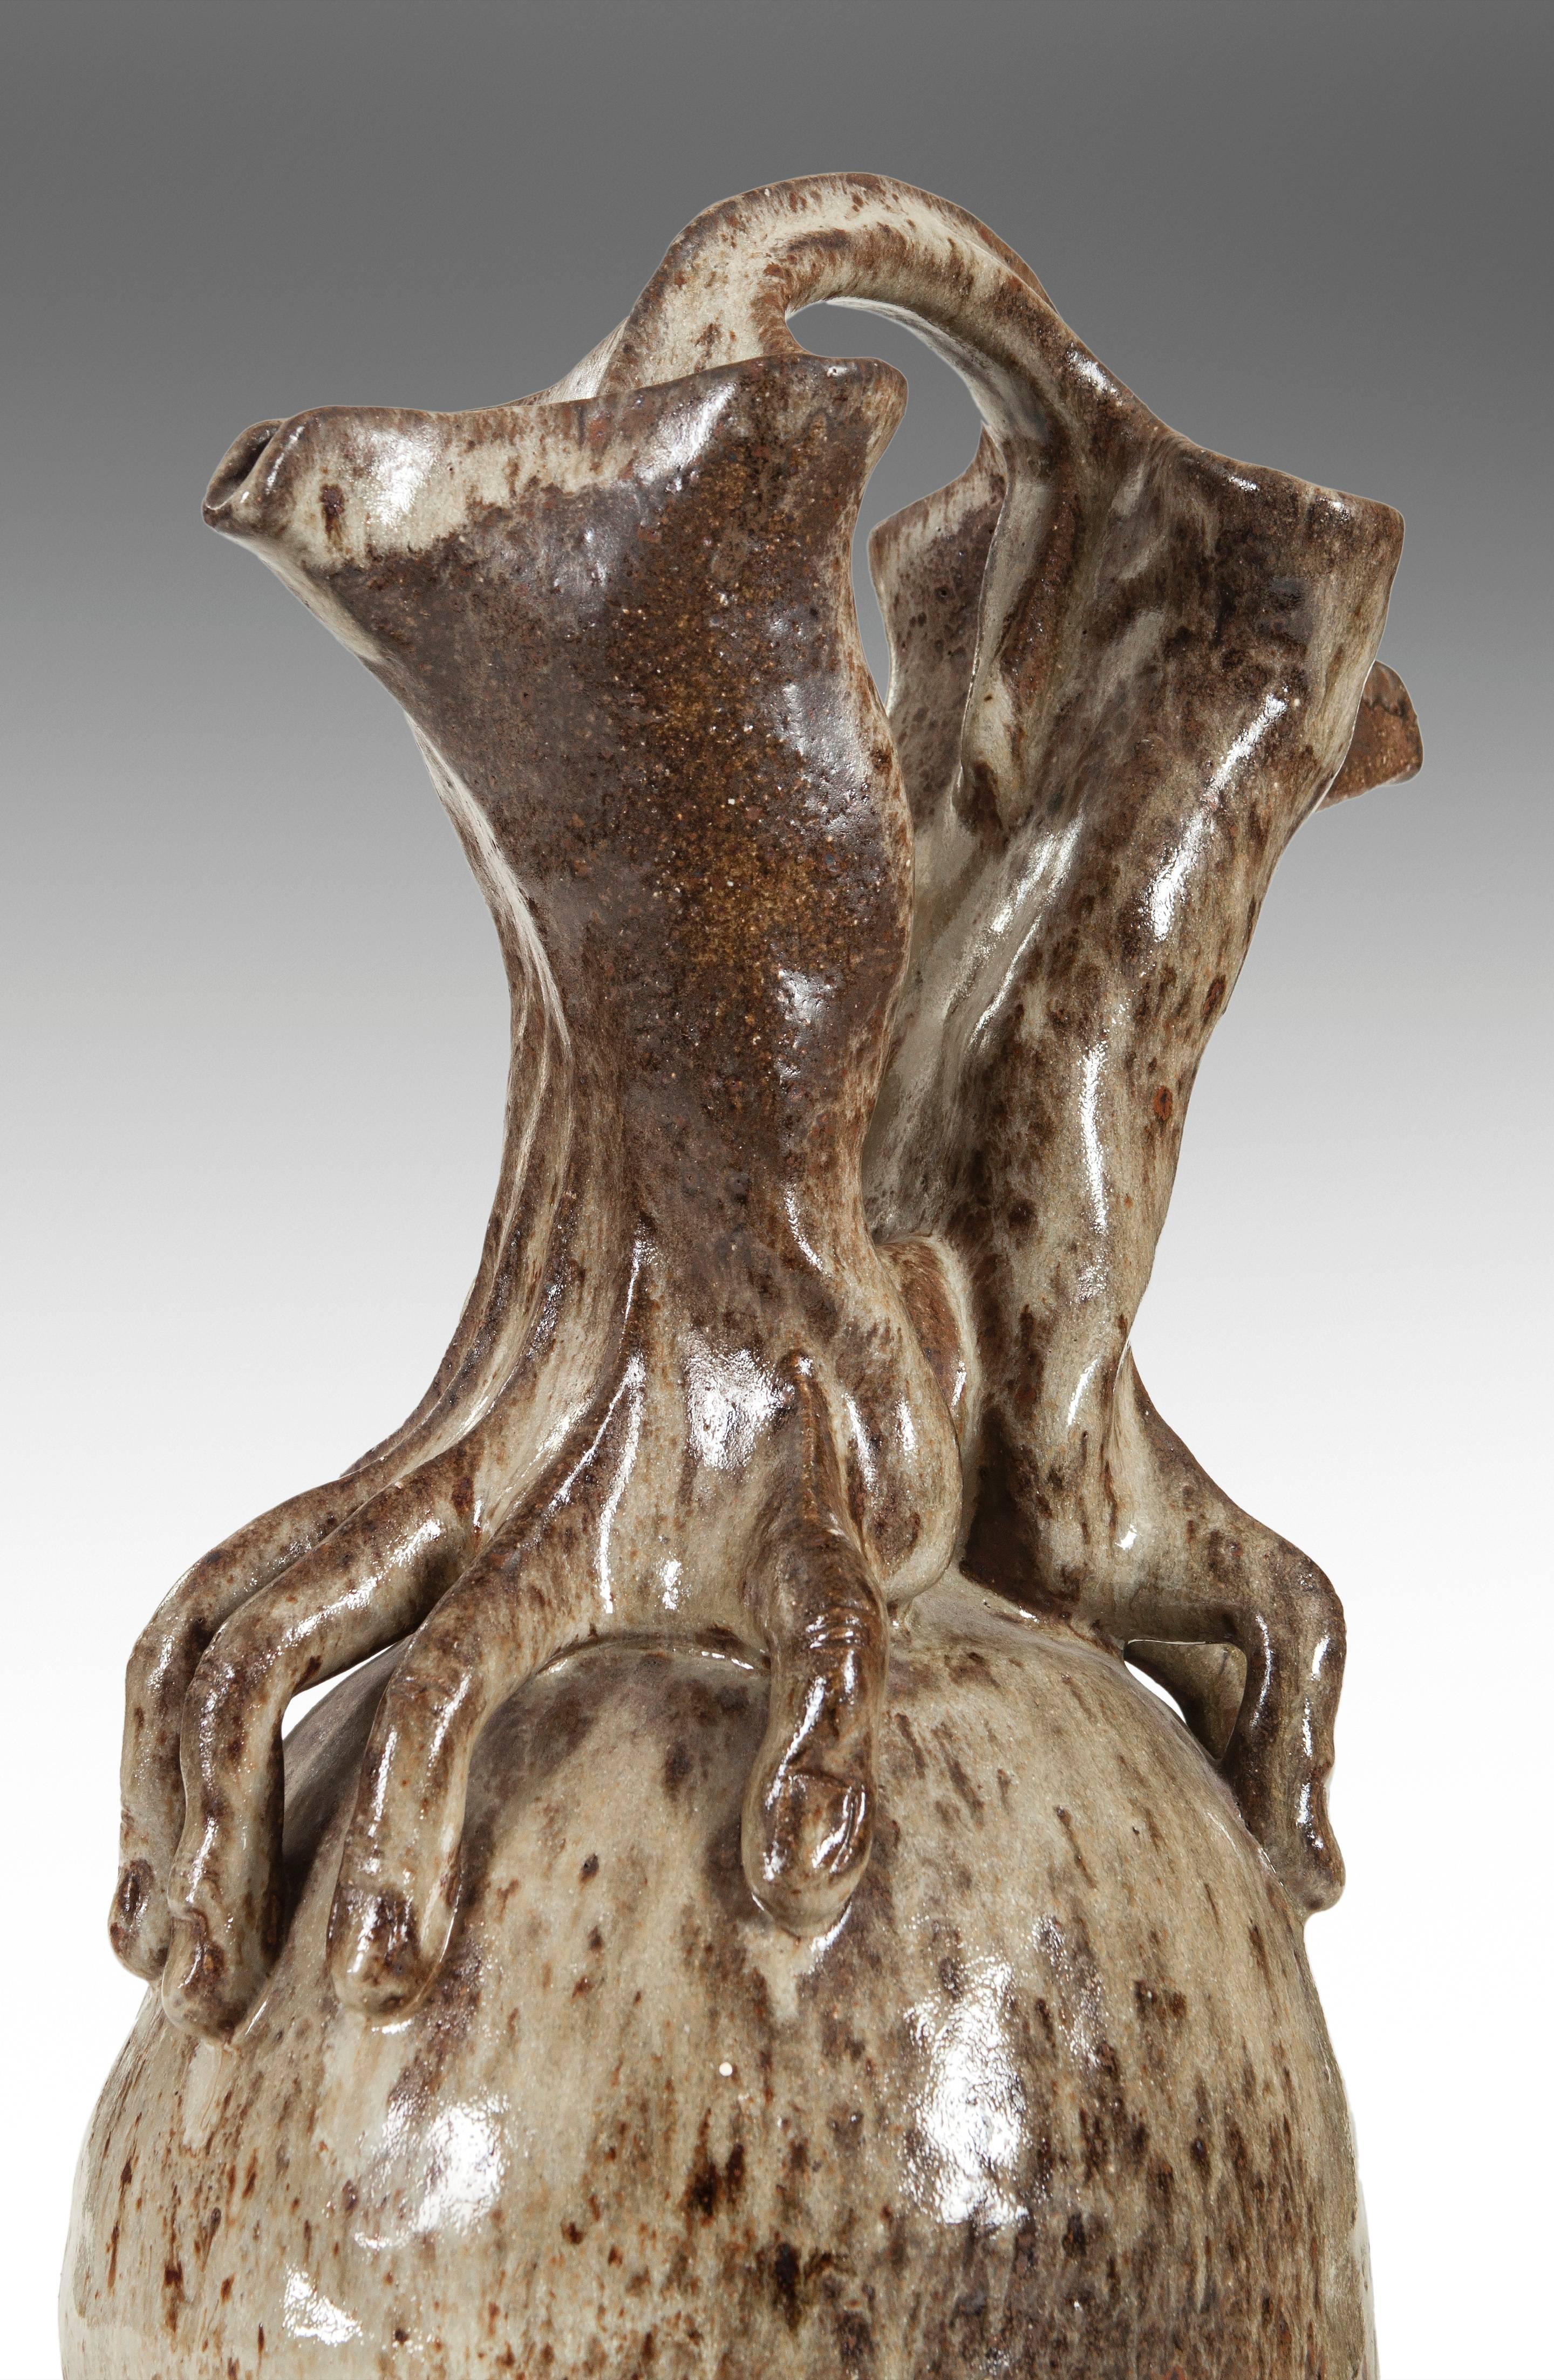 French A Glazed Stoneware Anthropomorphic Vase / Pitcher